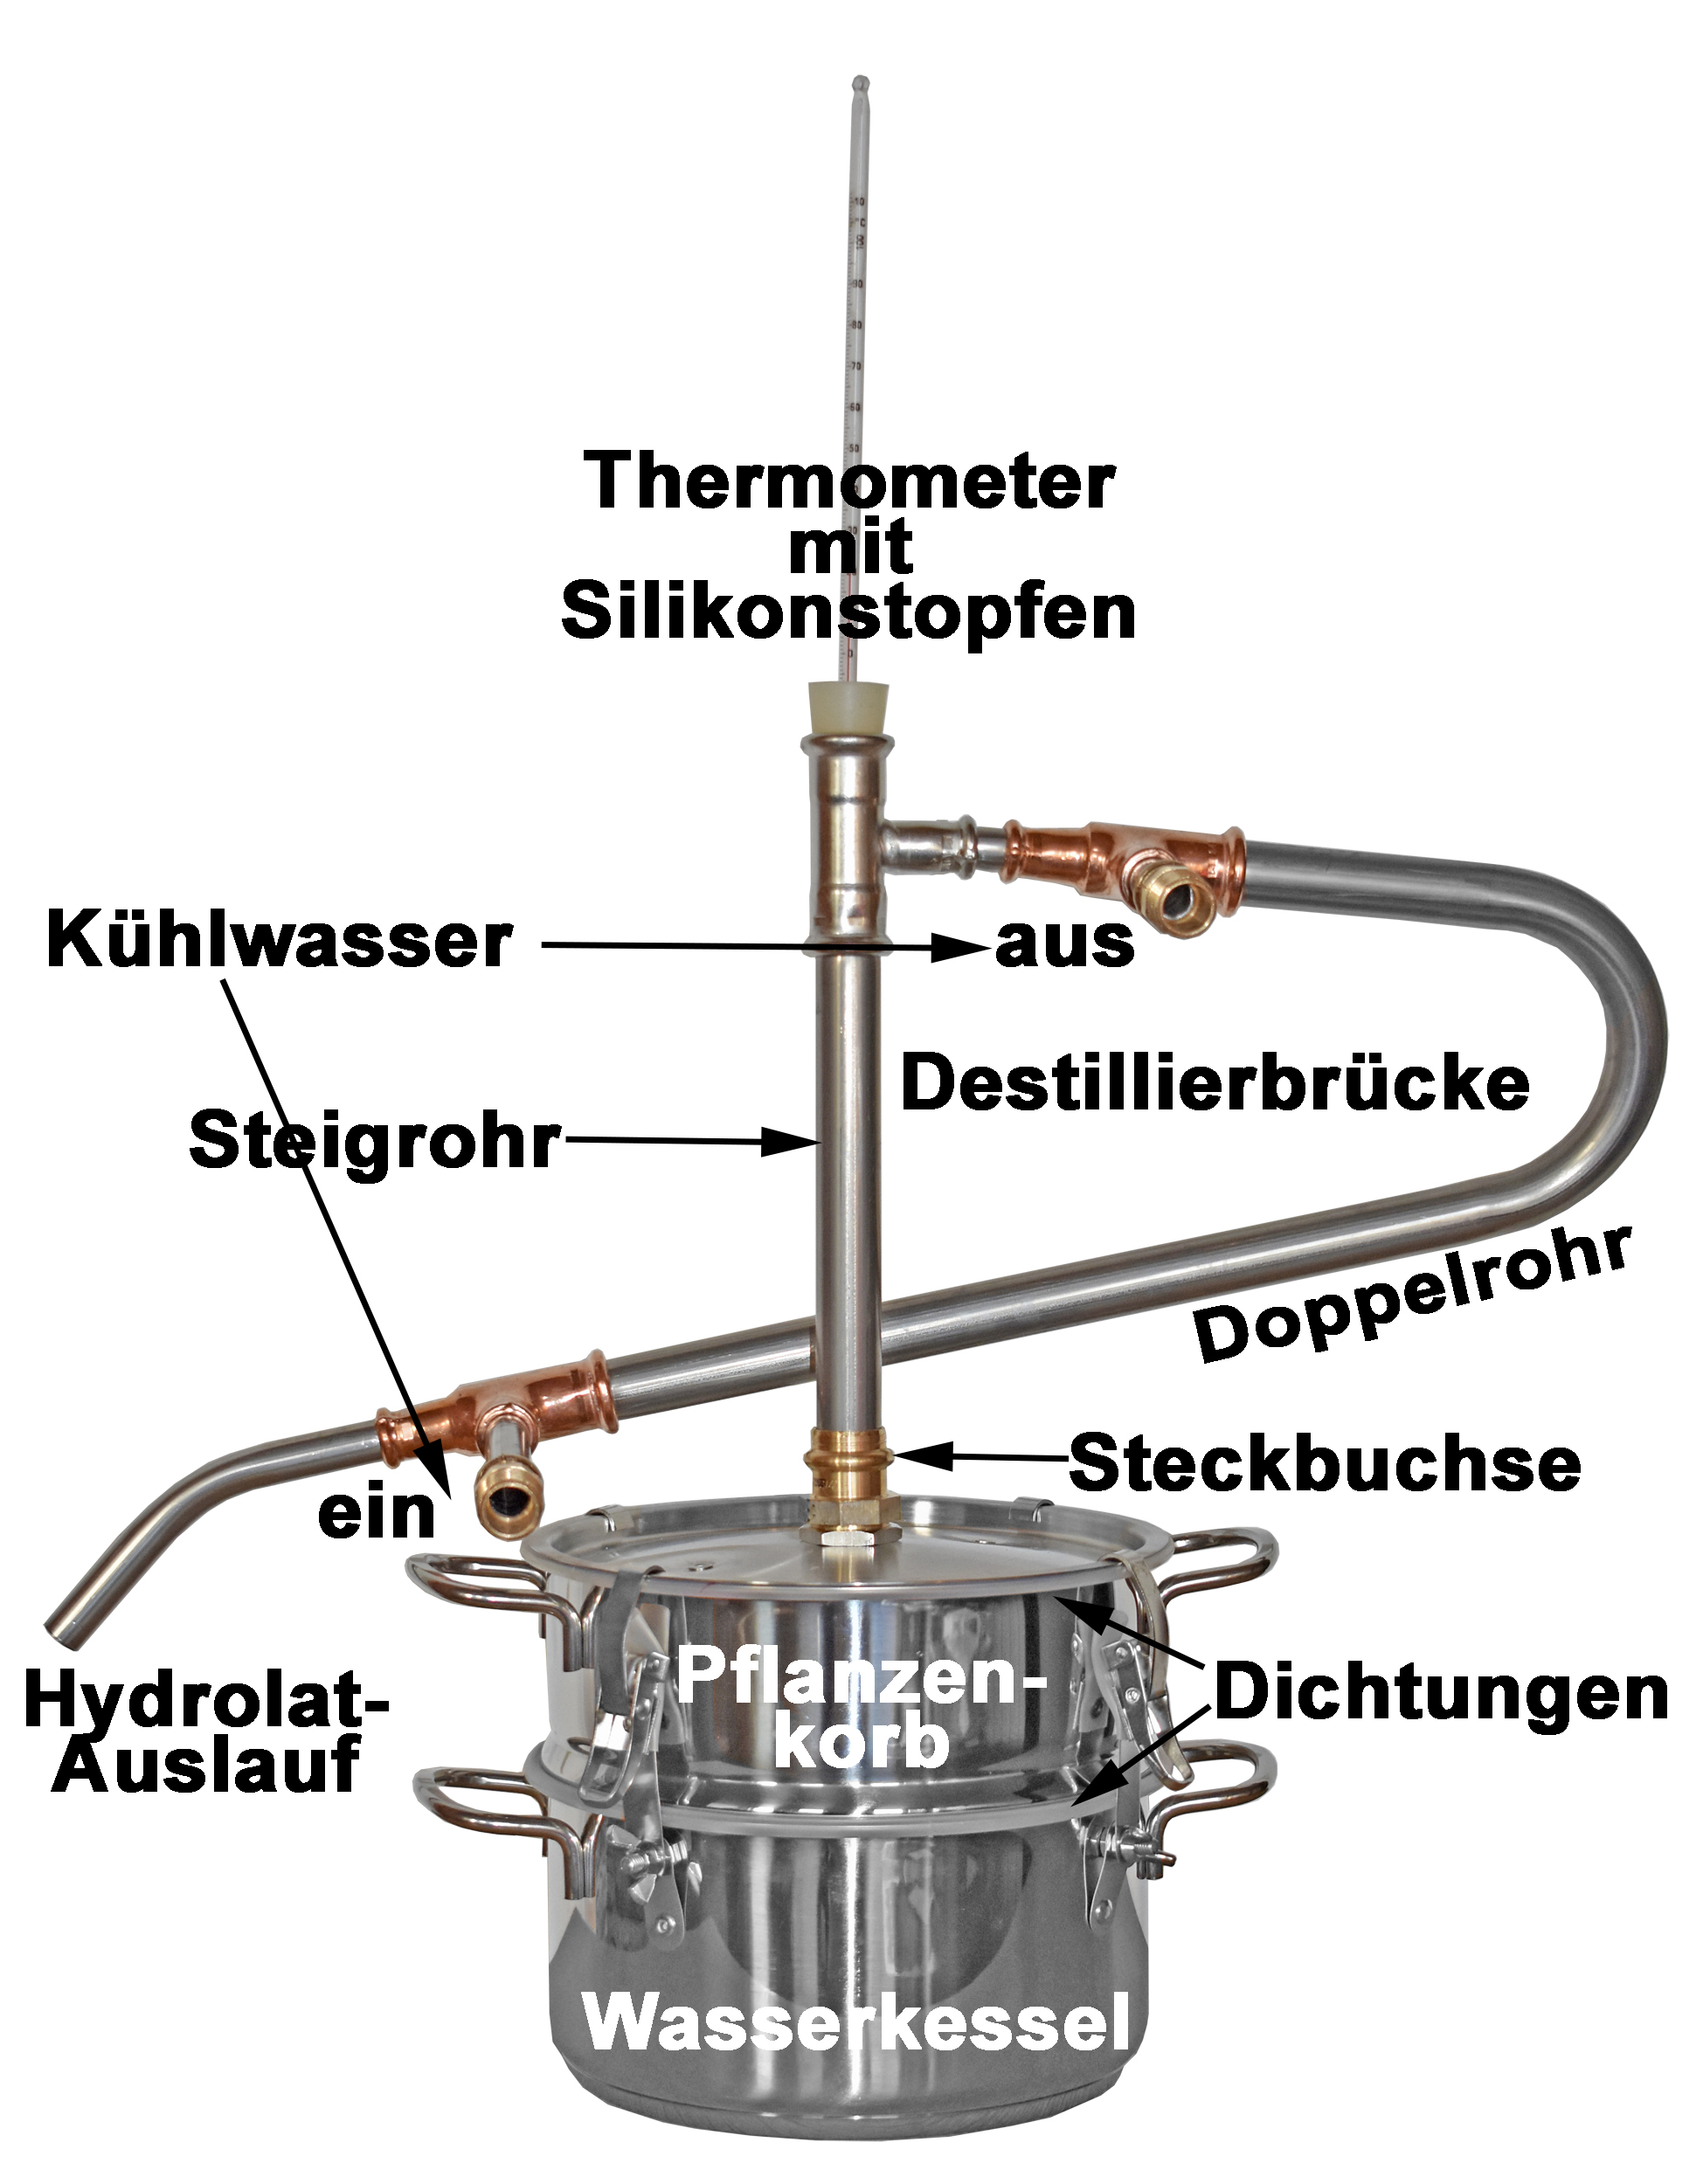 2 Liter Hobby Destille aus Edelstahl für Ätherisches Öl und Edelbrände -  anmeldefrei